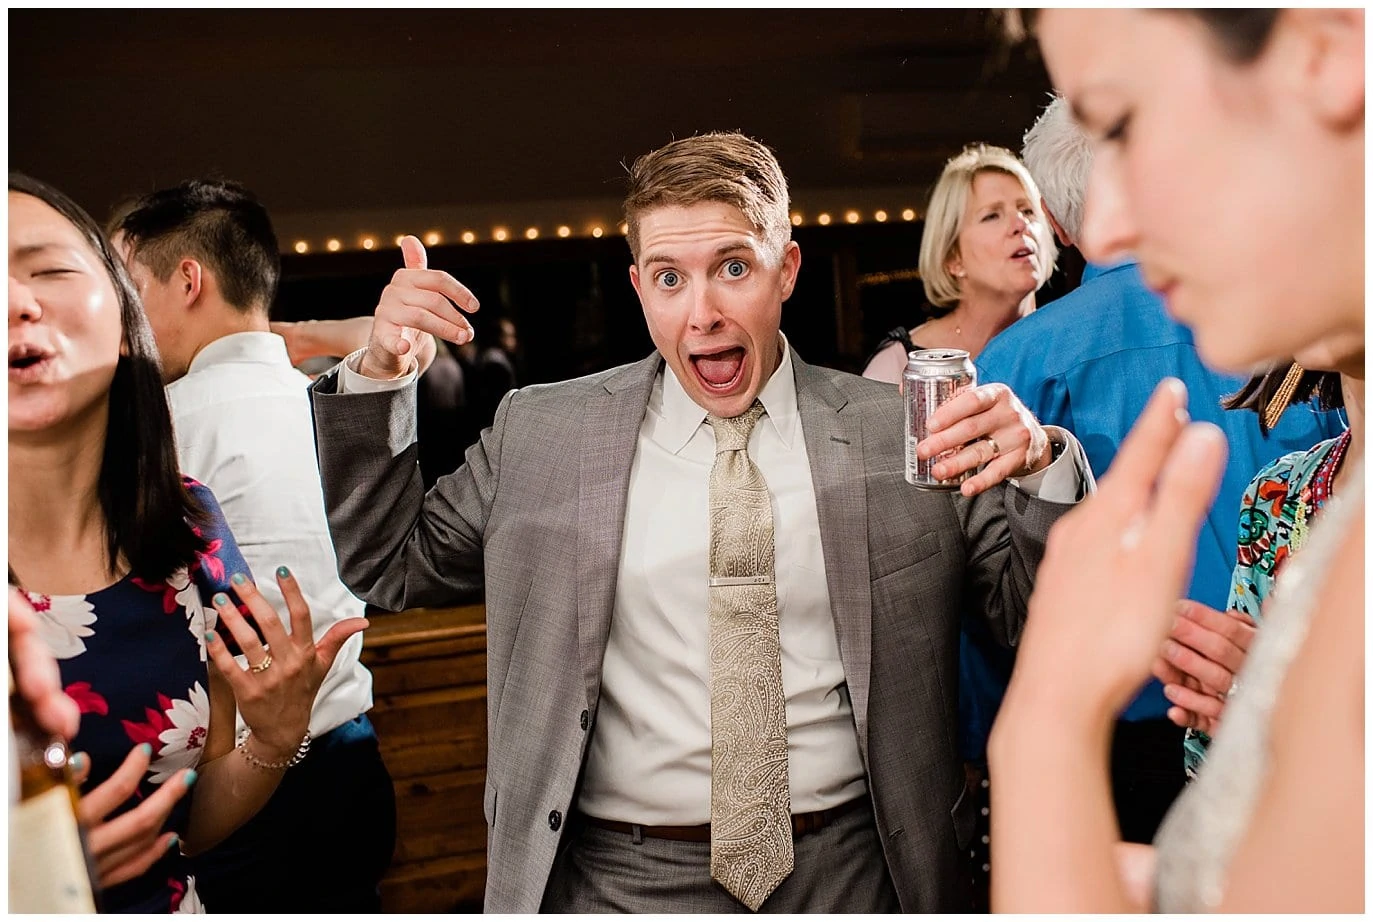 fun guests dancing at wedding photo